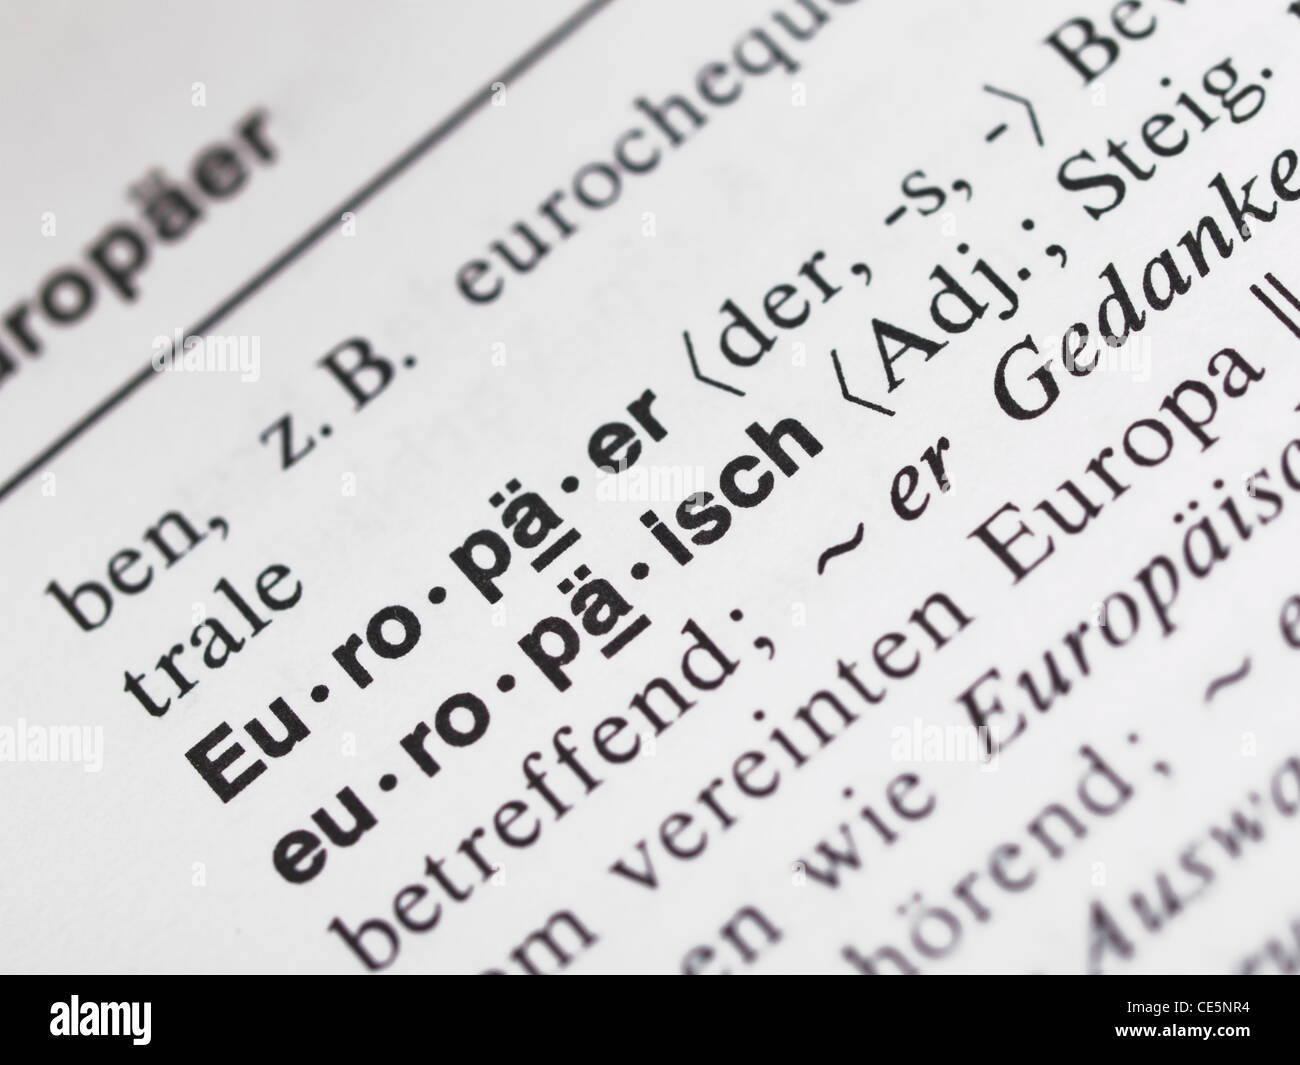 Deutsches Woerterbuch mit dem Begriffen 'Europaeer' und 'europaeisch' | German dictionary with the items 'European' in German Stock Photo